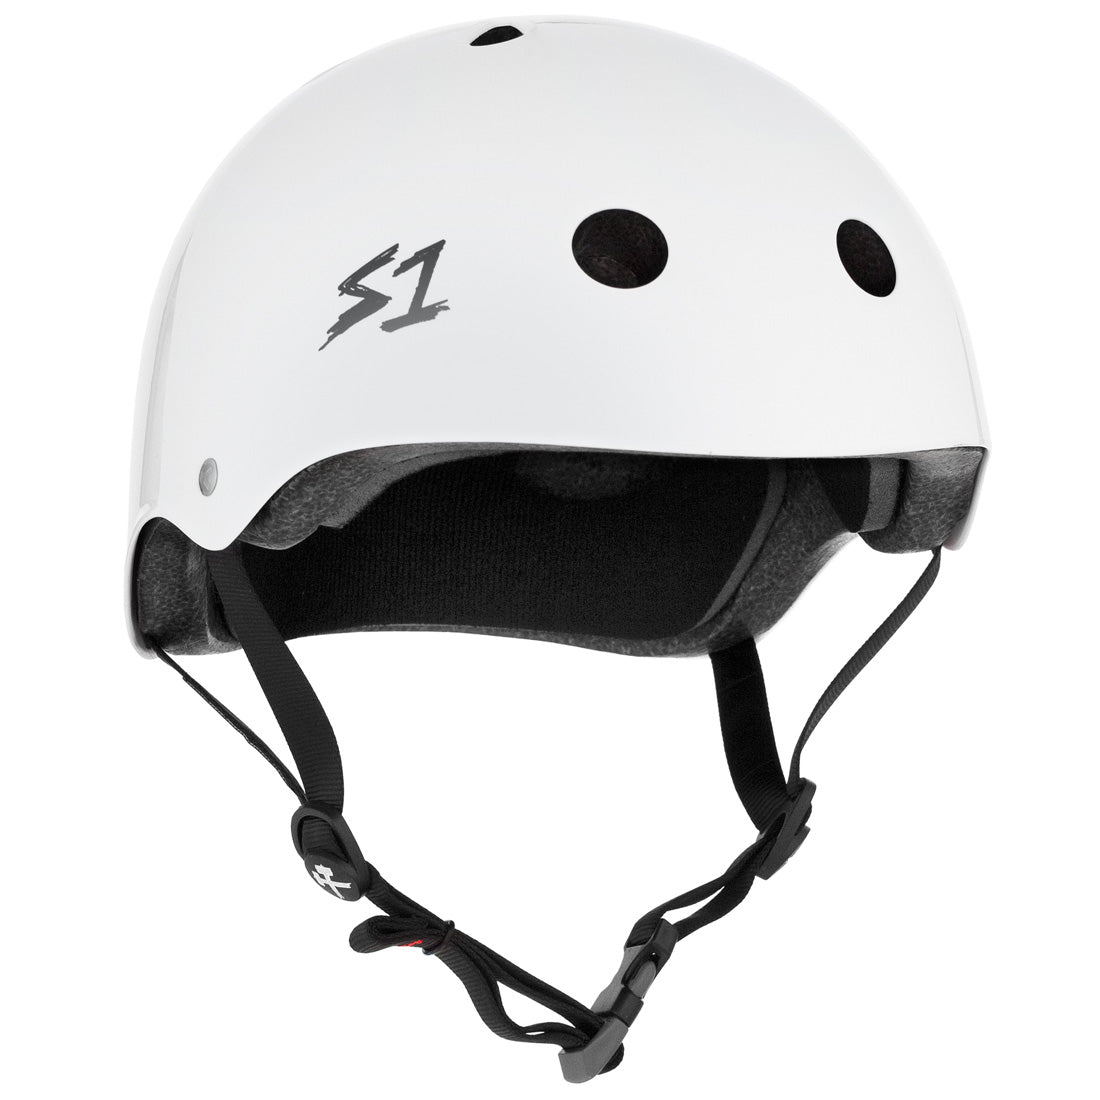 S-One Mega Lifer Helmet - White Gloss Helmets